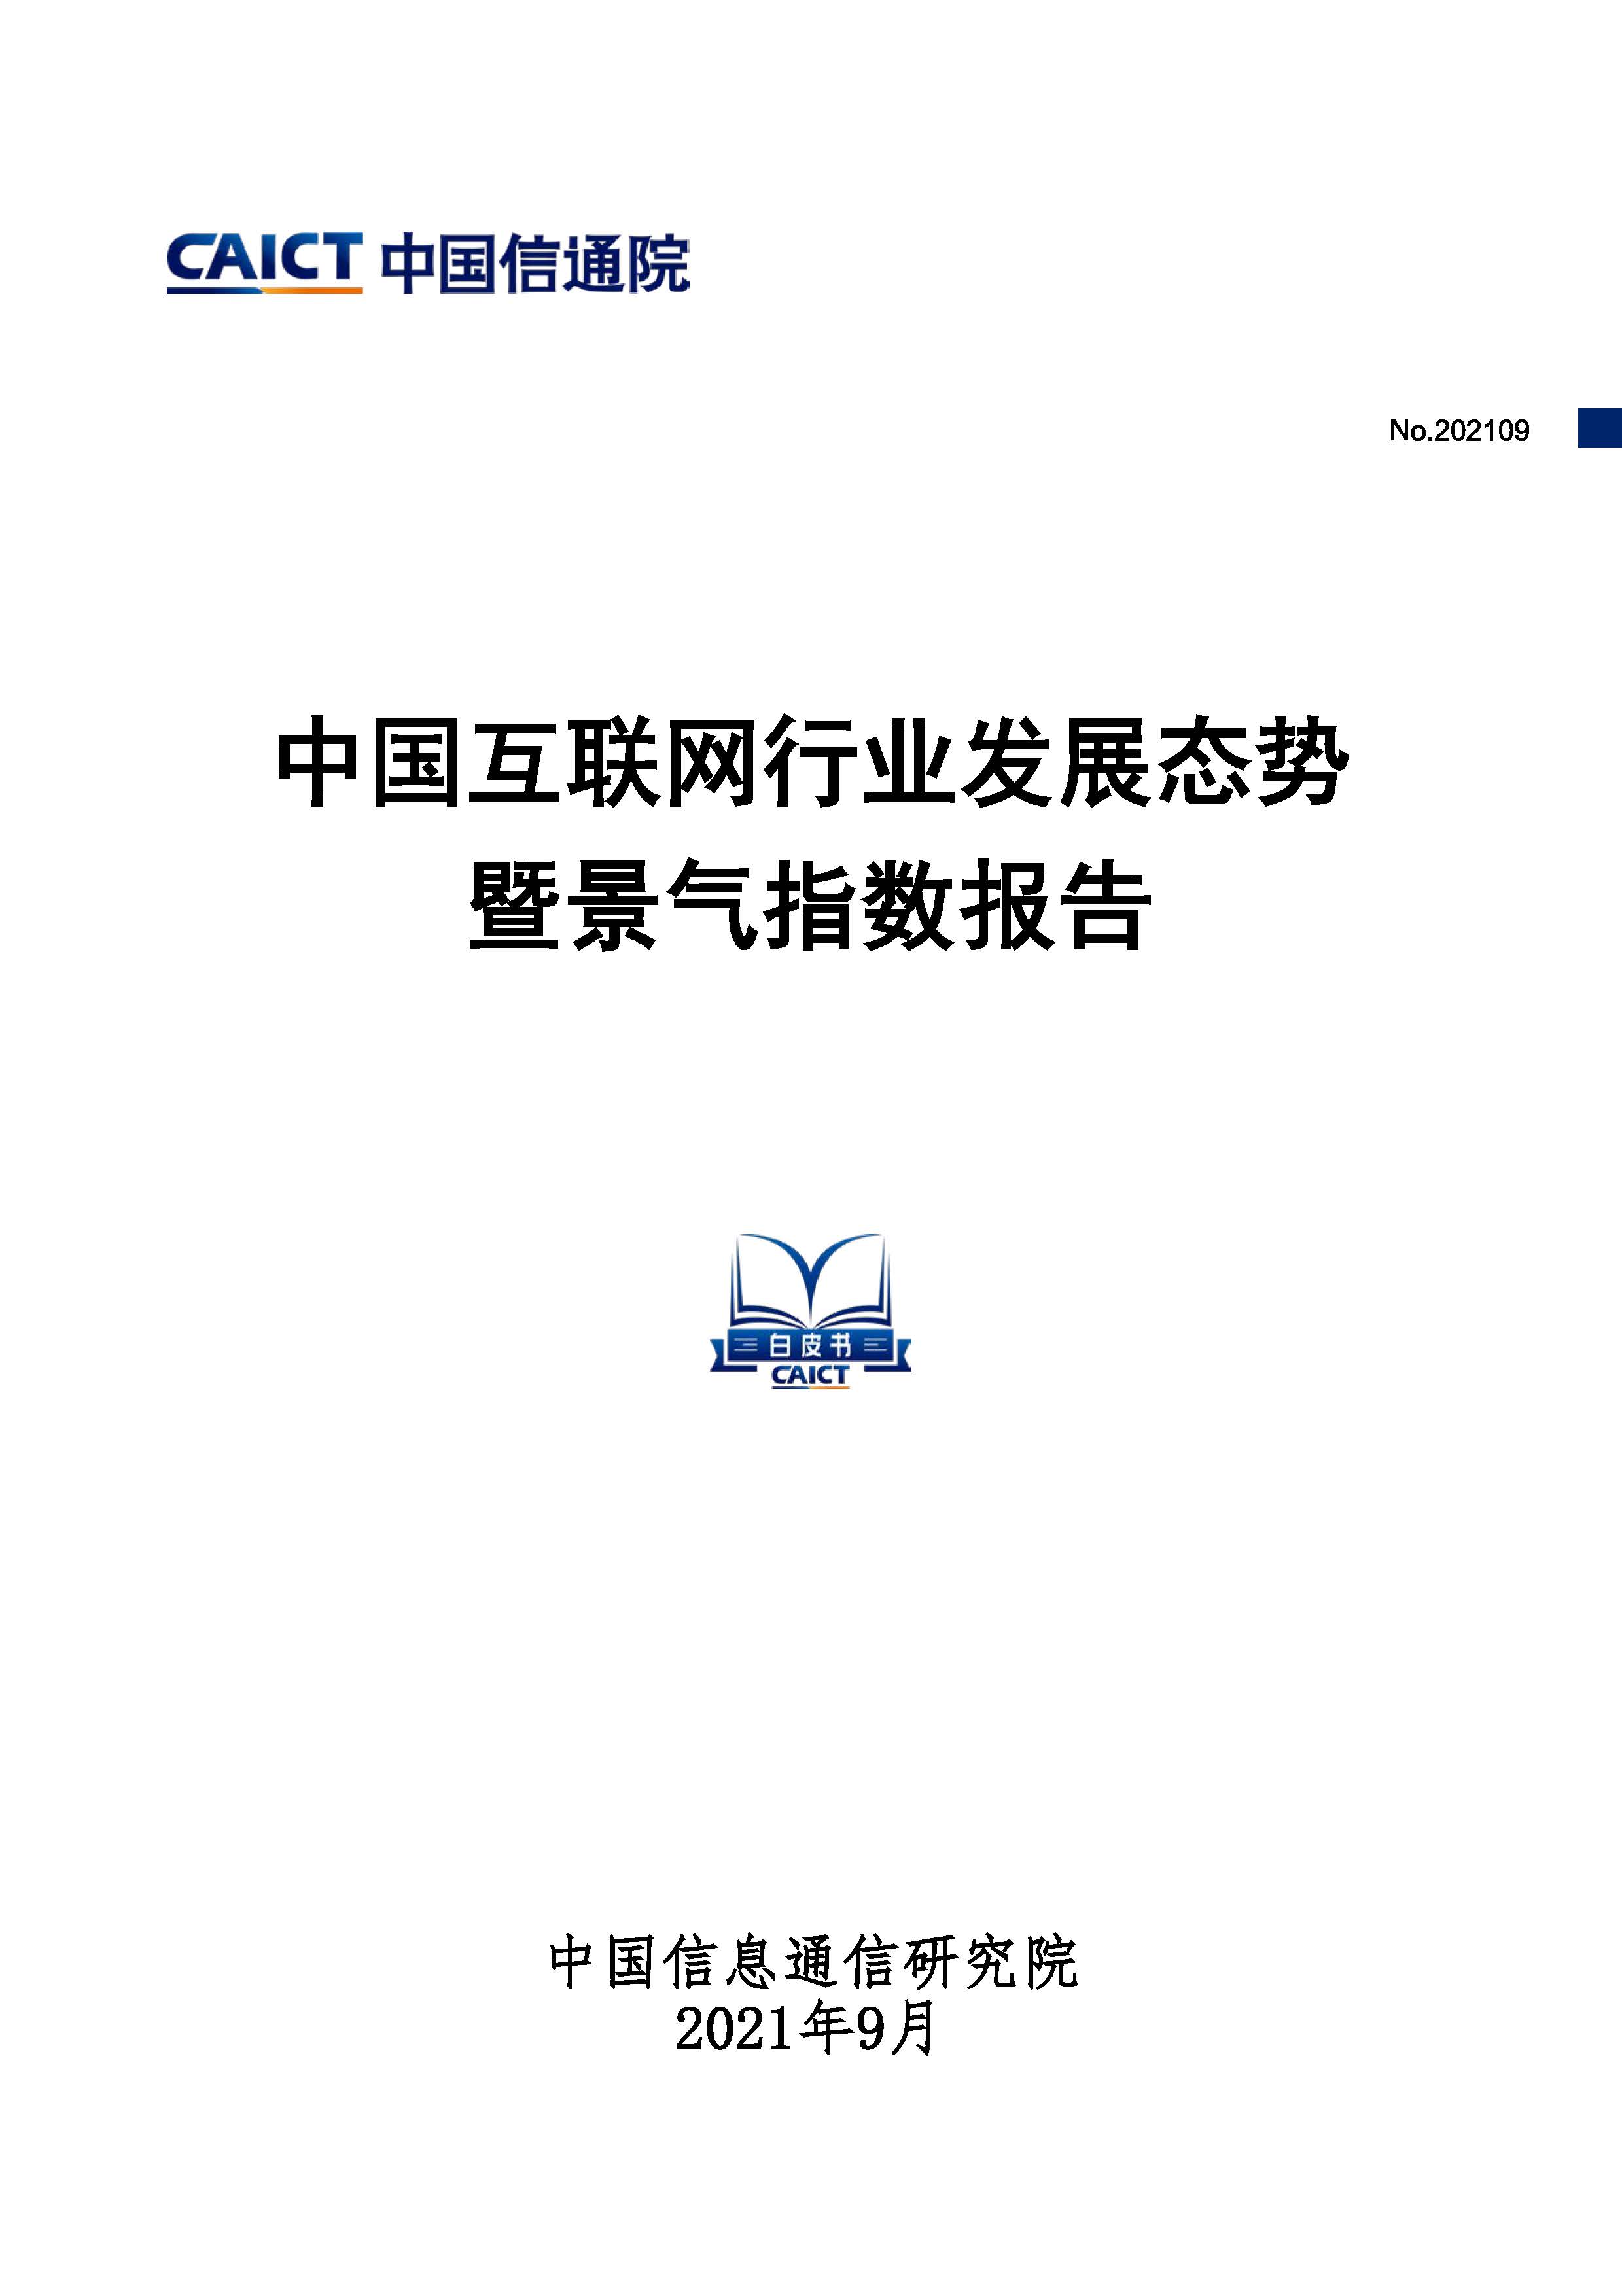 中国互联网行业发展态势暨景气指数报告首页.jpg